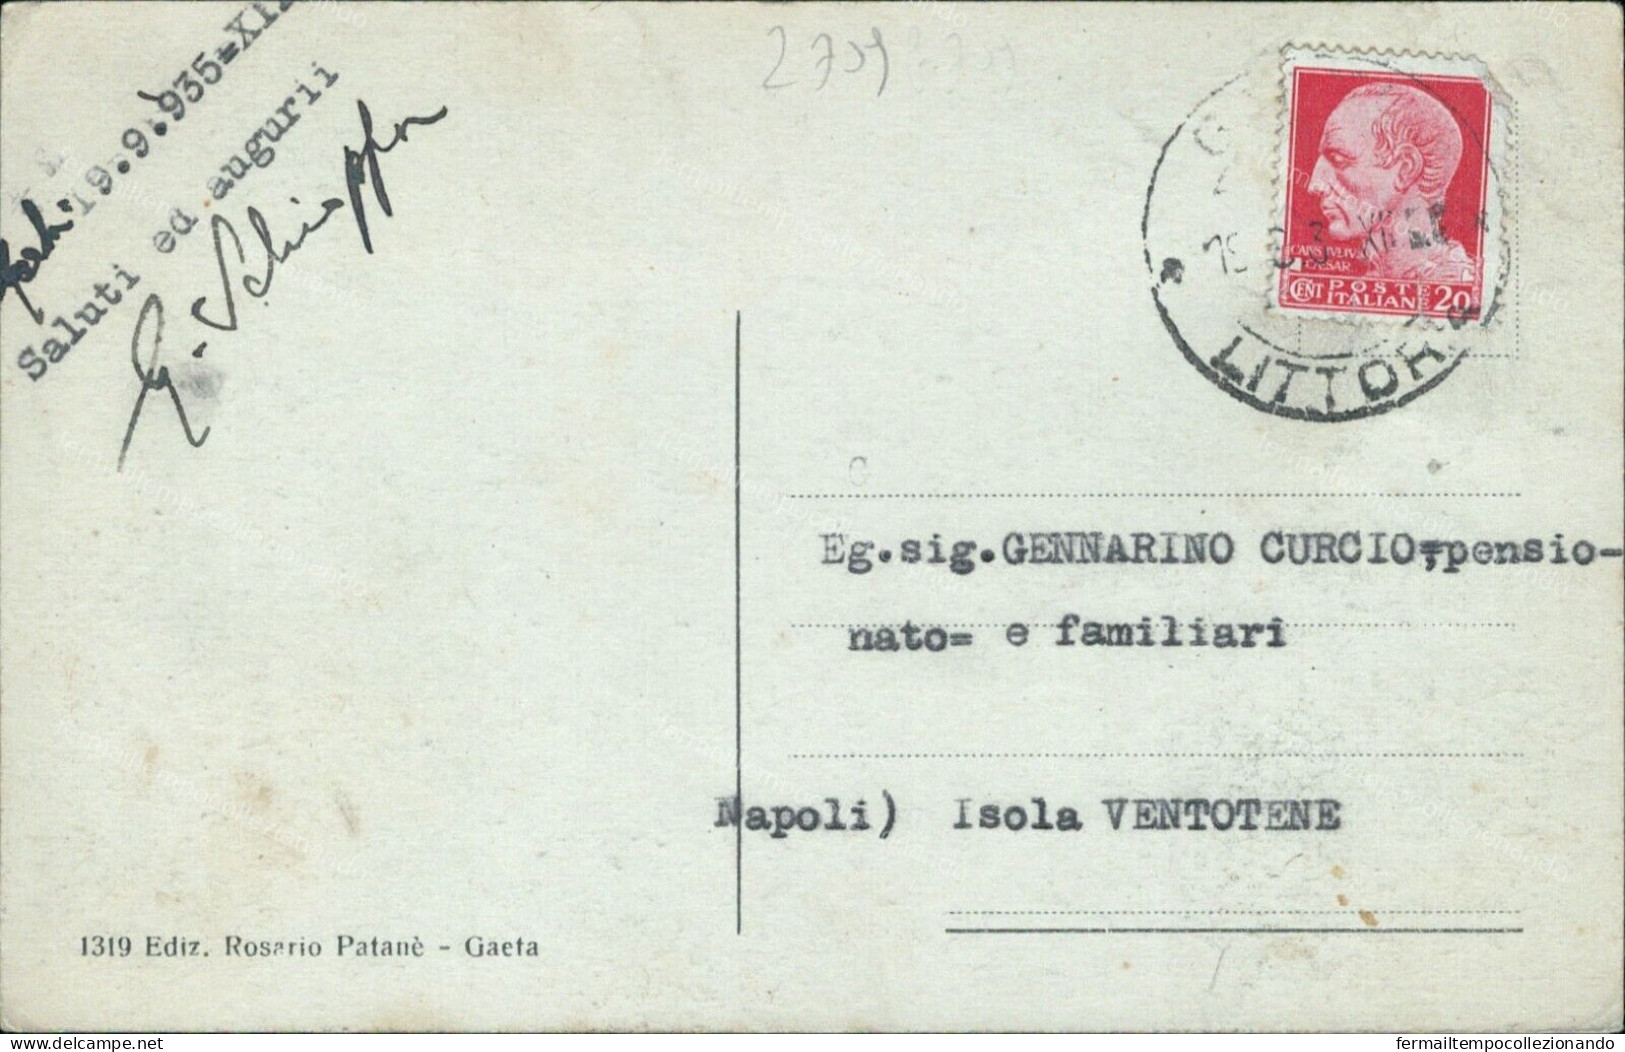 Z709 Cartolina Gaeta Spiaggia Di Serapo Provincia Di Latina Lazio 1935 - Latina